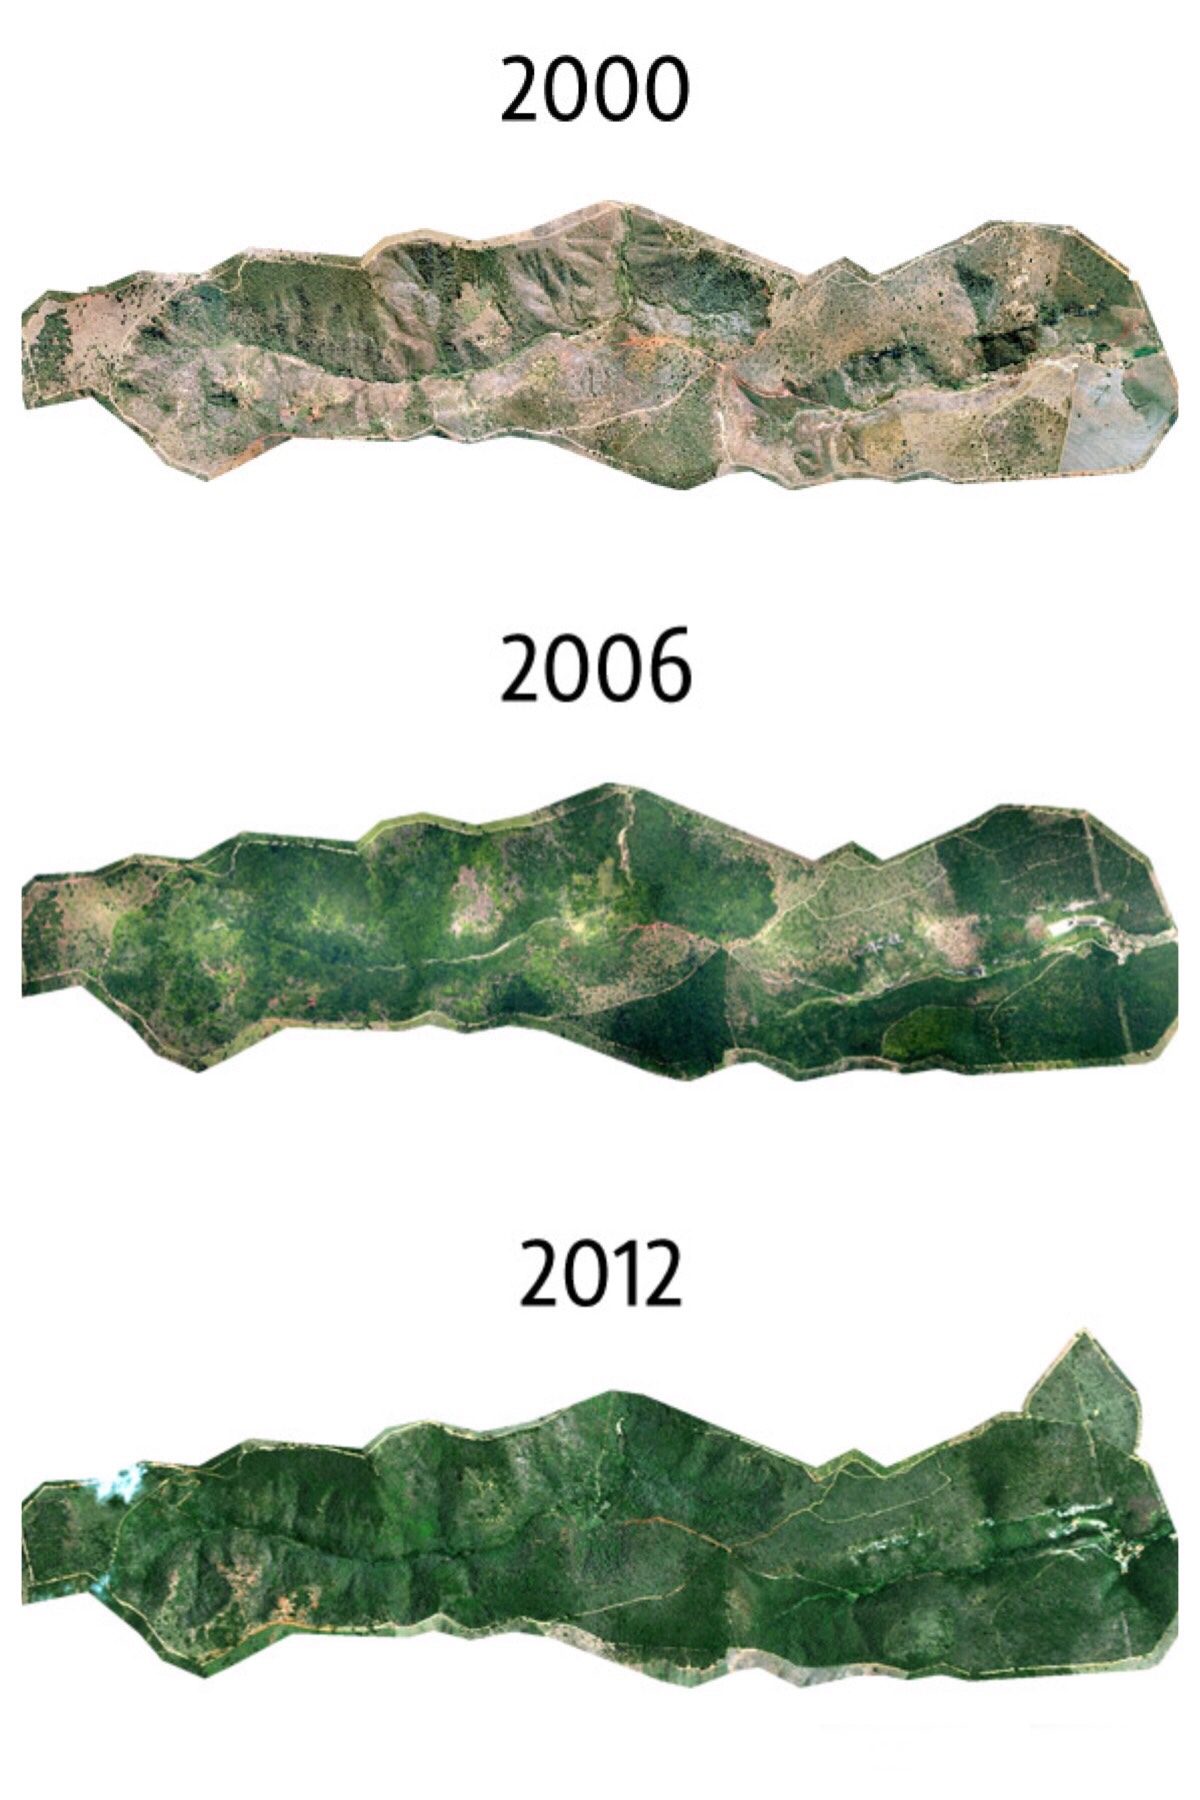 La granja estaba completamente devastada cuando en 1998, recibió el título de Reserva Natural Privada (PNHR). El rancho original poseía al rededor de 1.740 acres. El primer proceso de reforestación vino en diciembre de 1999, y desde entonces, año tras año, con el apoyo de importantes asociaciones, ha sido posible plantar mas de dos millones de semillas de más de 290 especies de árboles diferentes, recreando un bosque de especies arbóreas y arbustos originarios de las zonas atlánticas.